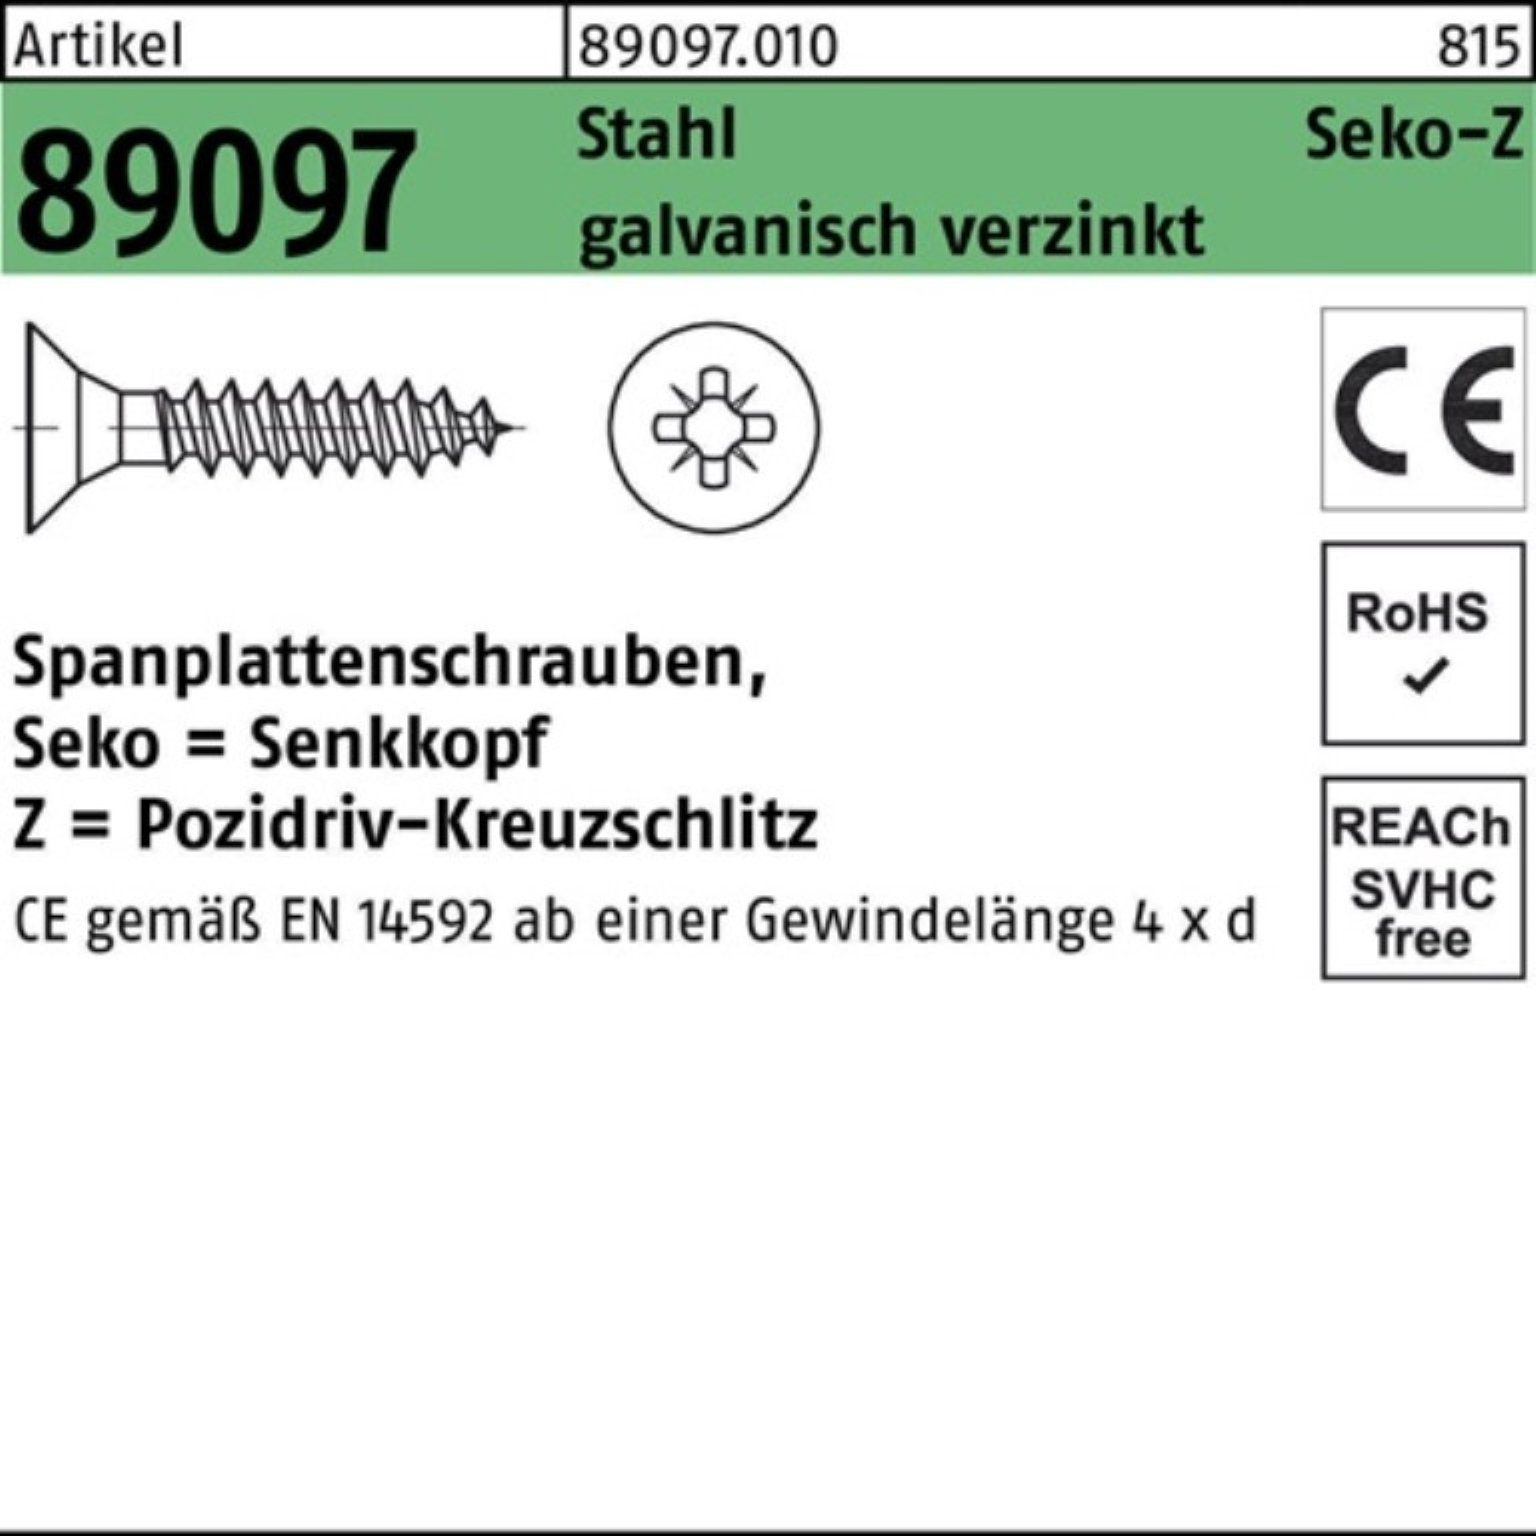 Stahl Spanplattenschraube 89097 galv.ve Reyher 4x50-Z Pack PZ Spanplattenschraube R SEKO VG 500er